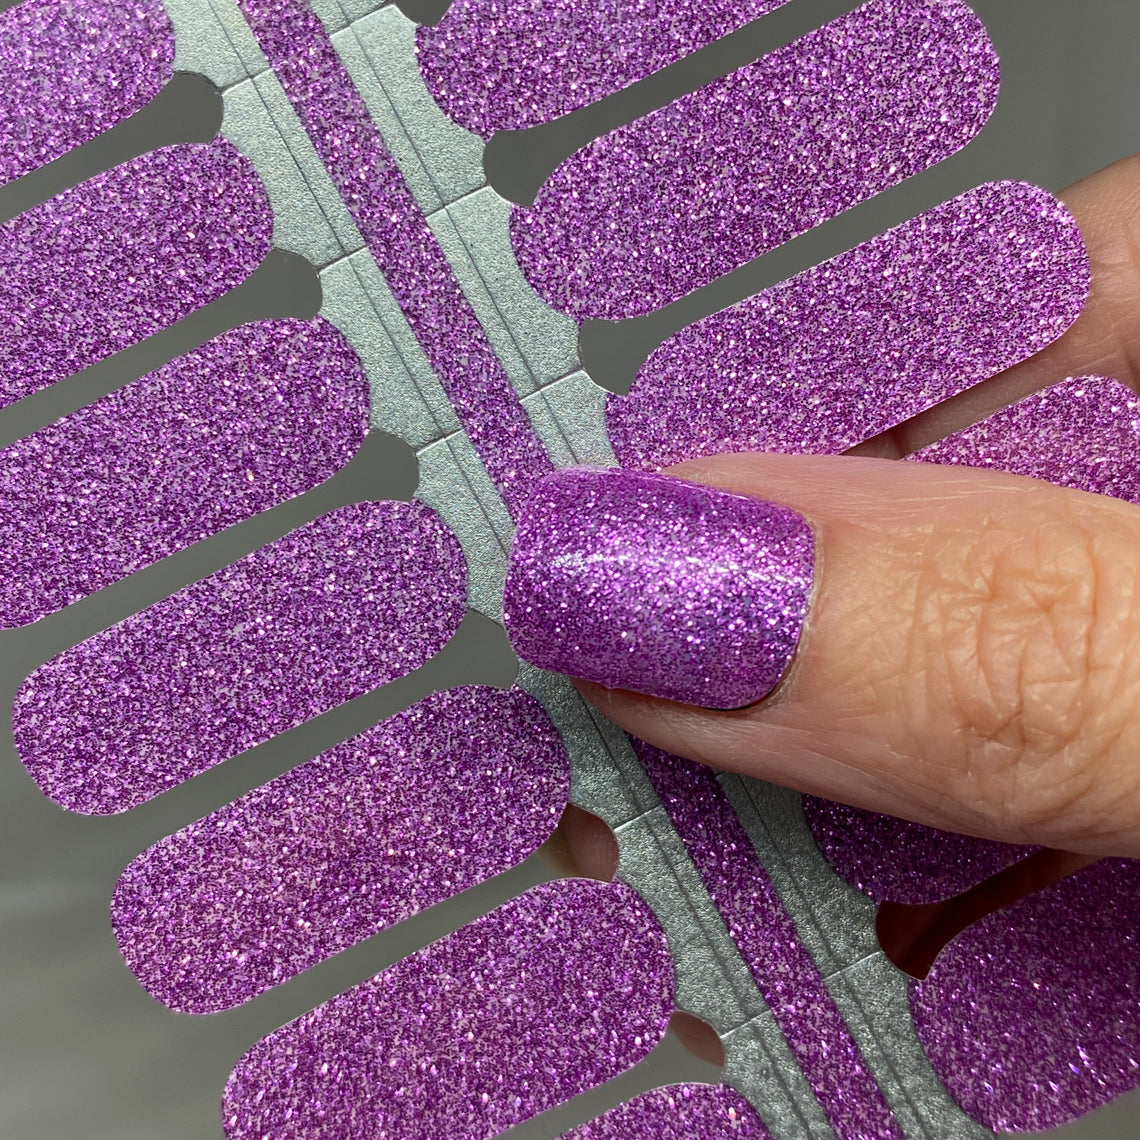 Lilac Glitter Nail Wraps